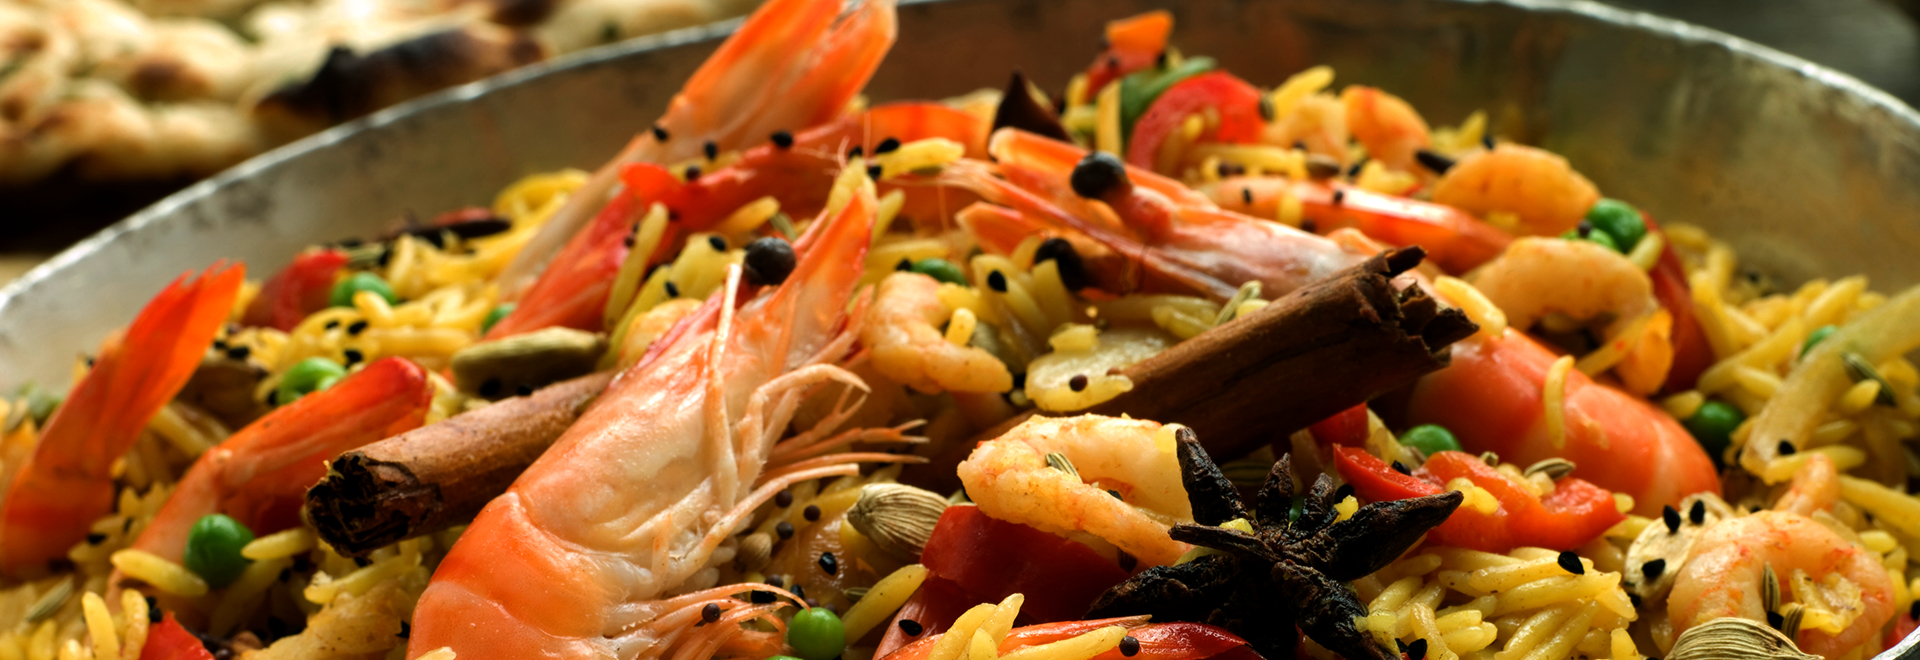 本格スペイン料理をアットホームな雰囲気でお楽しみください。